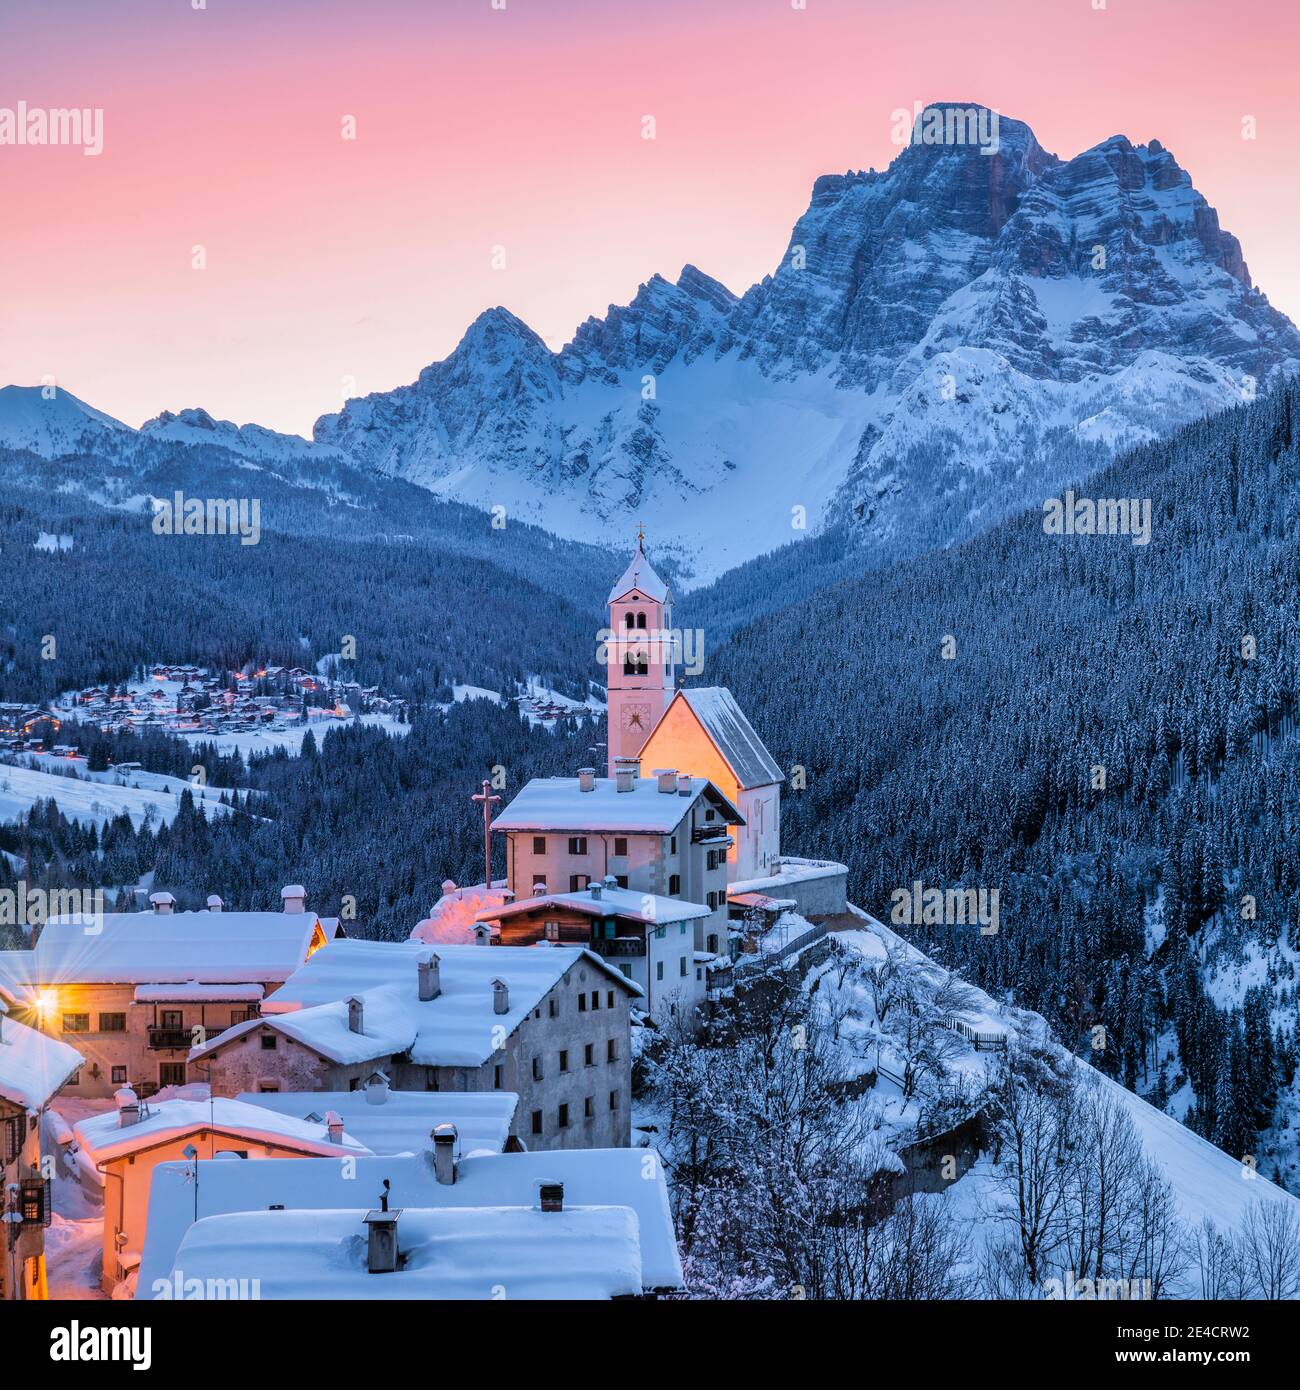 Italy, Veneto, Belluno, Agordino, alpine village of Colle Santa Lucia in winter at dawn, illuminated houses and church, Dolomites Stock Photo